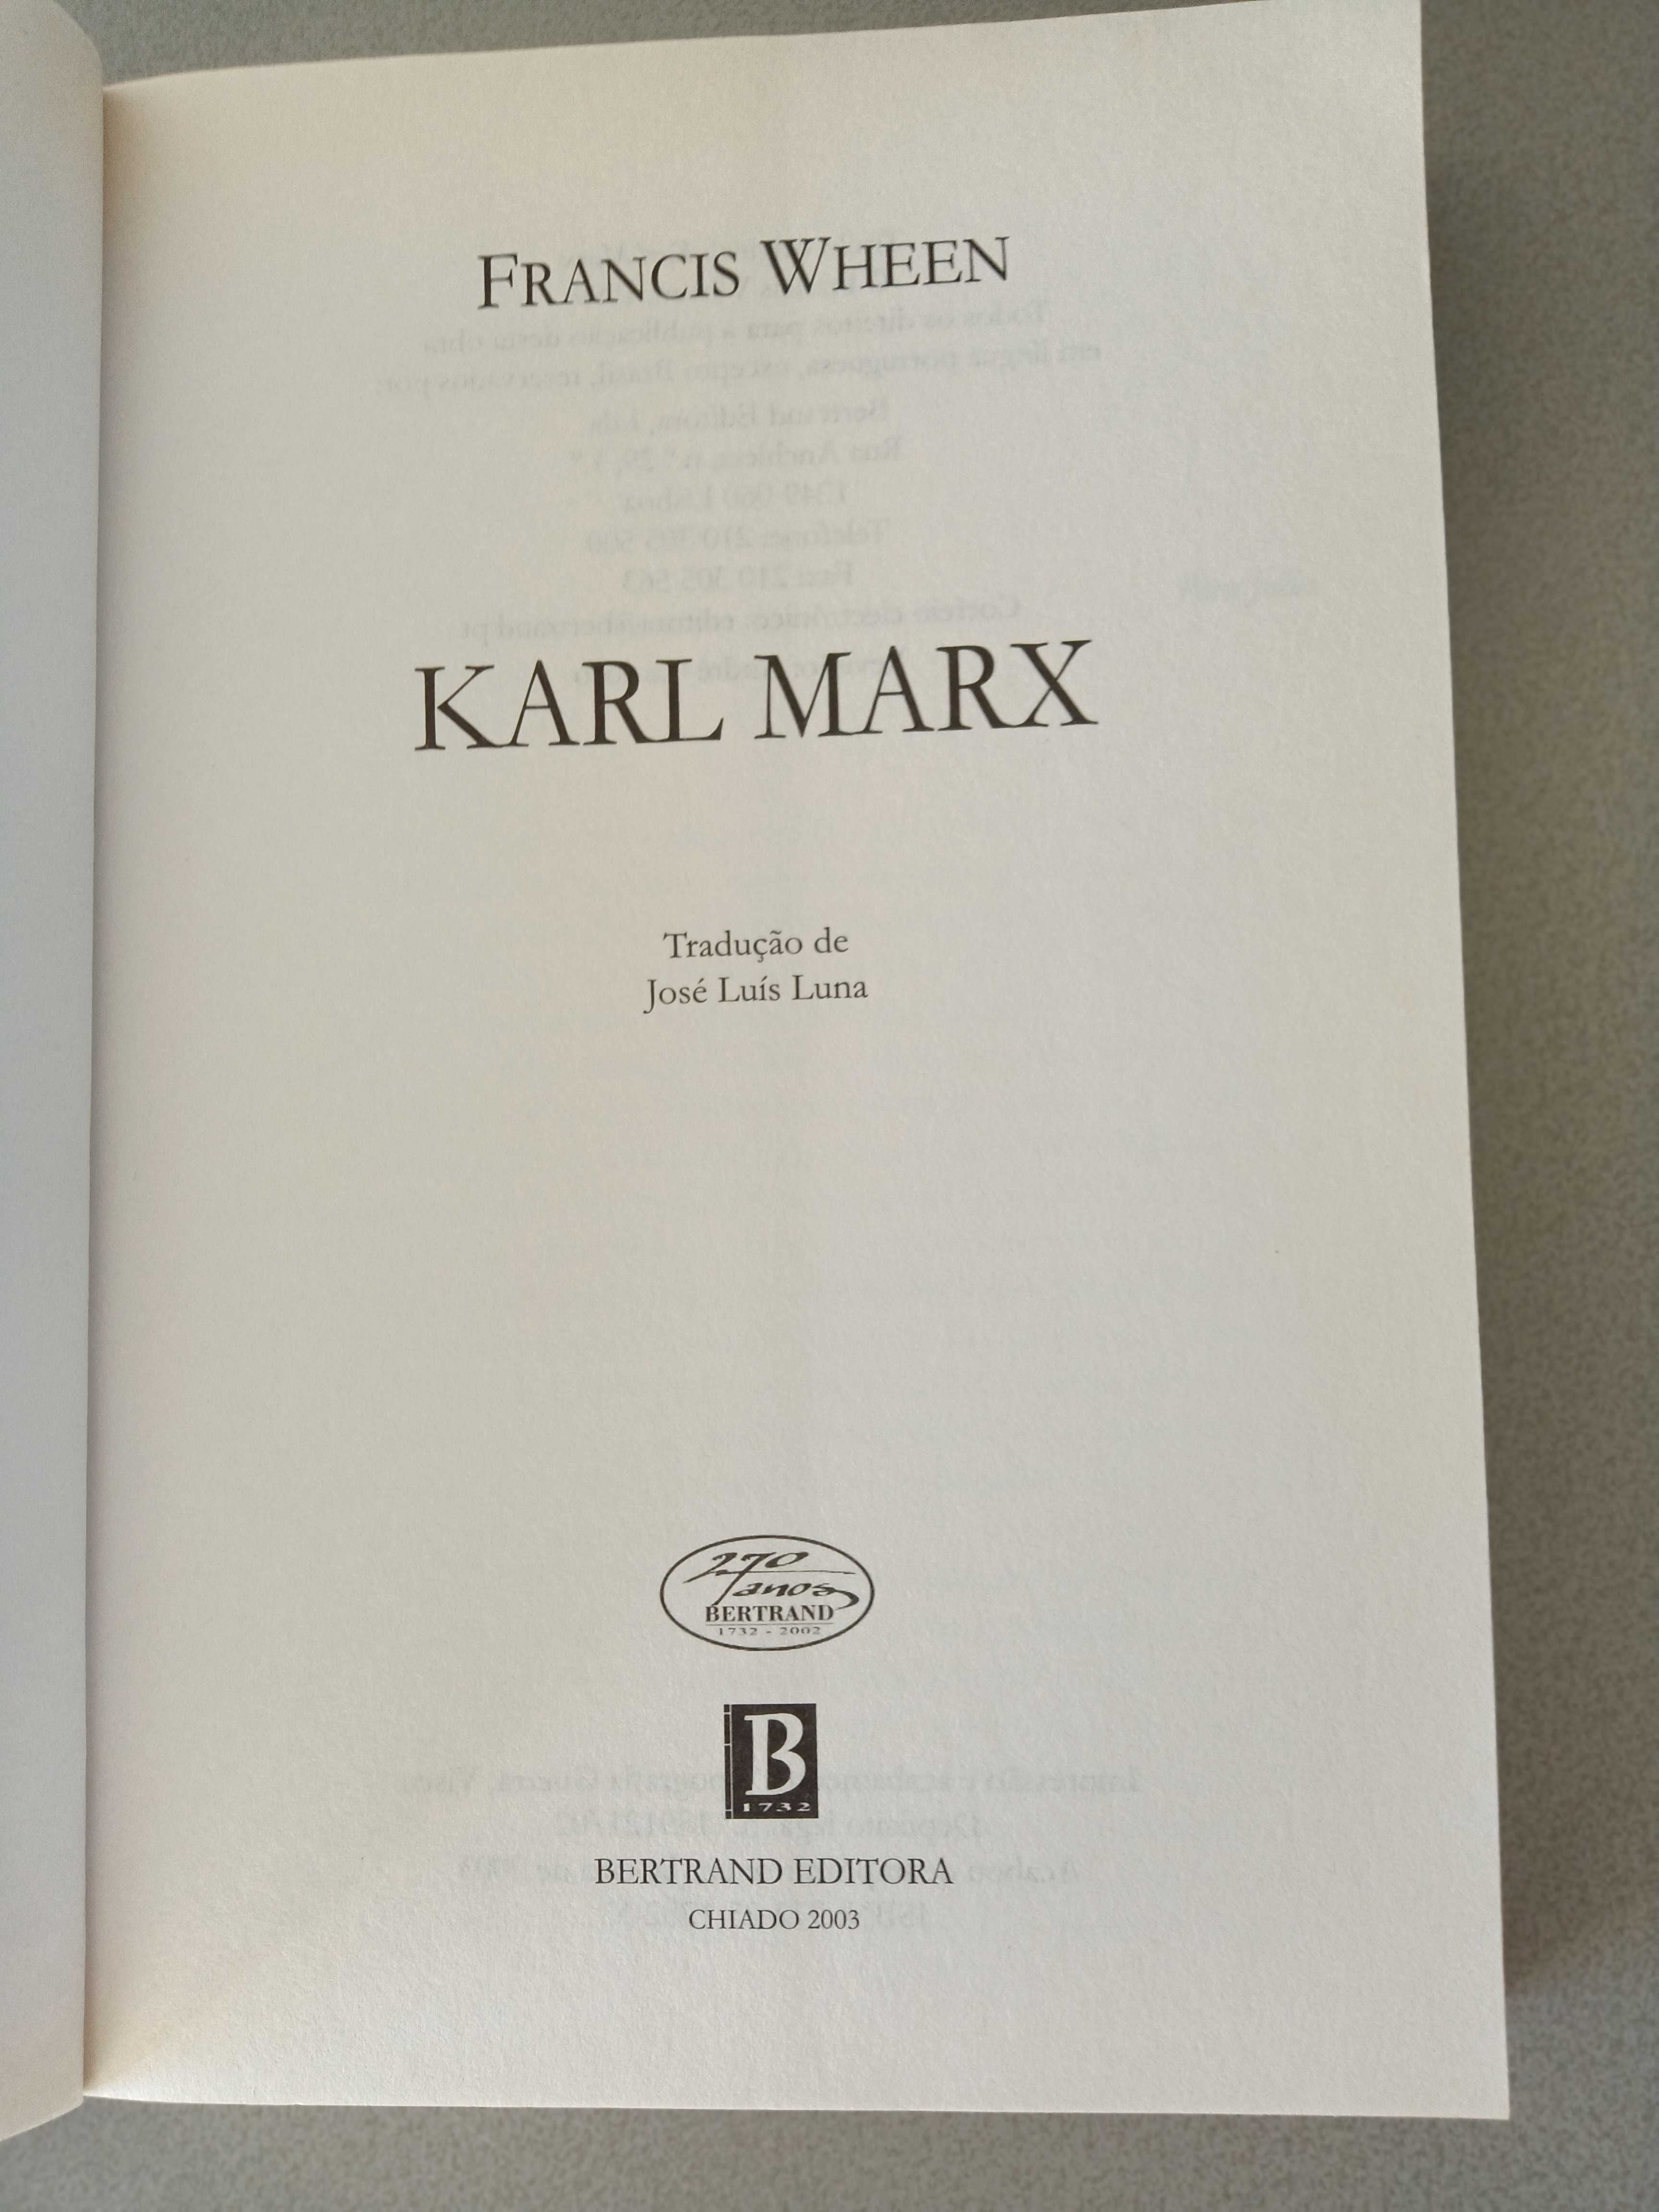 Karl Mark (Biografia) de Francis Whenn